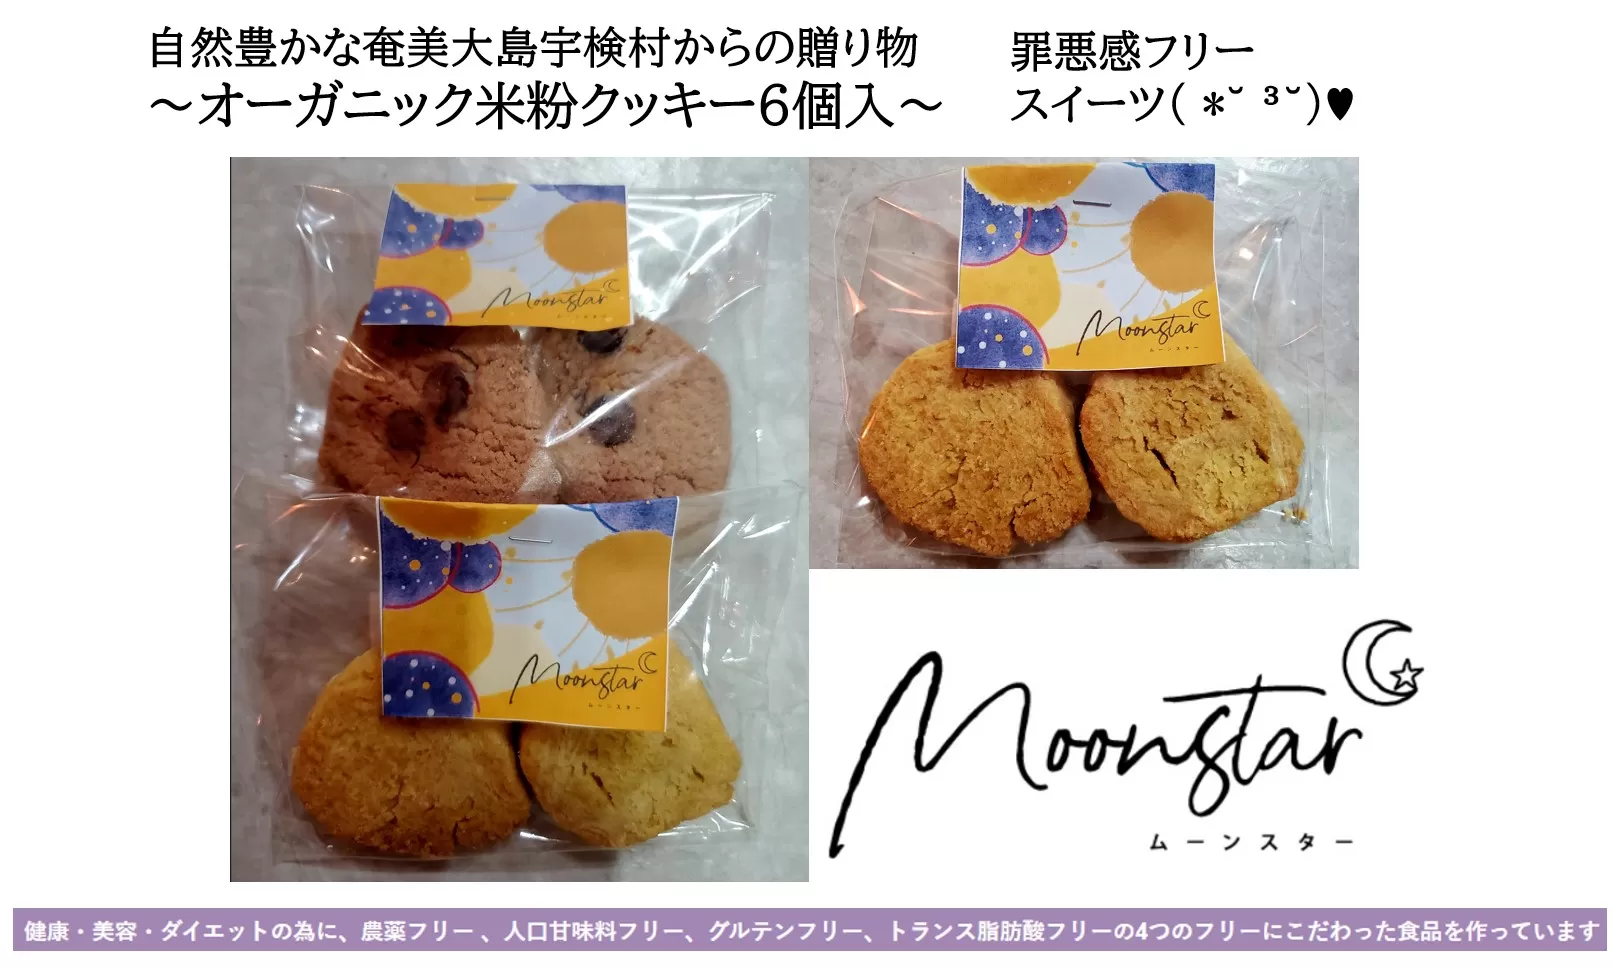 ムーンスター「オーガニック米粉クッキー」・4枚セット